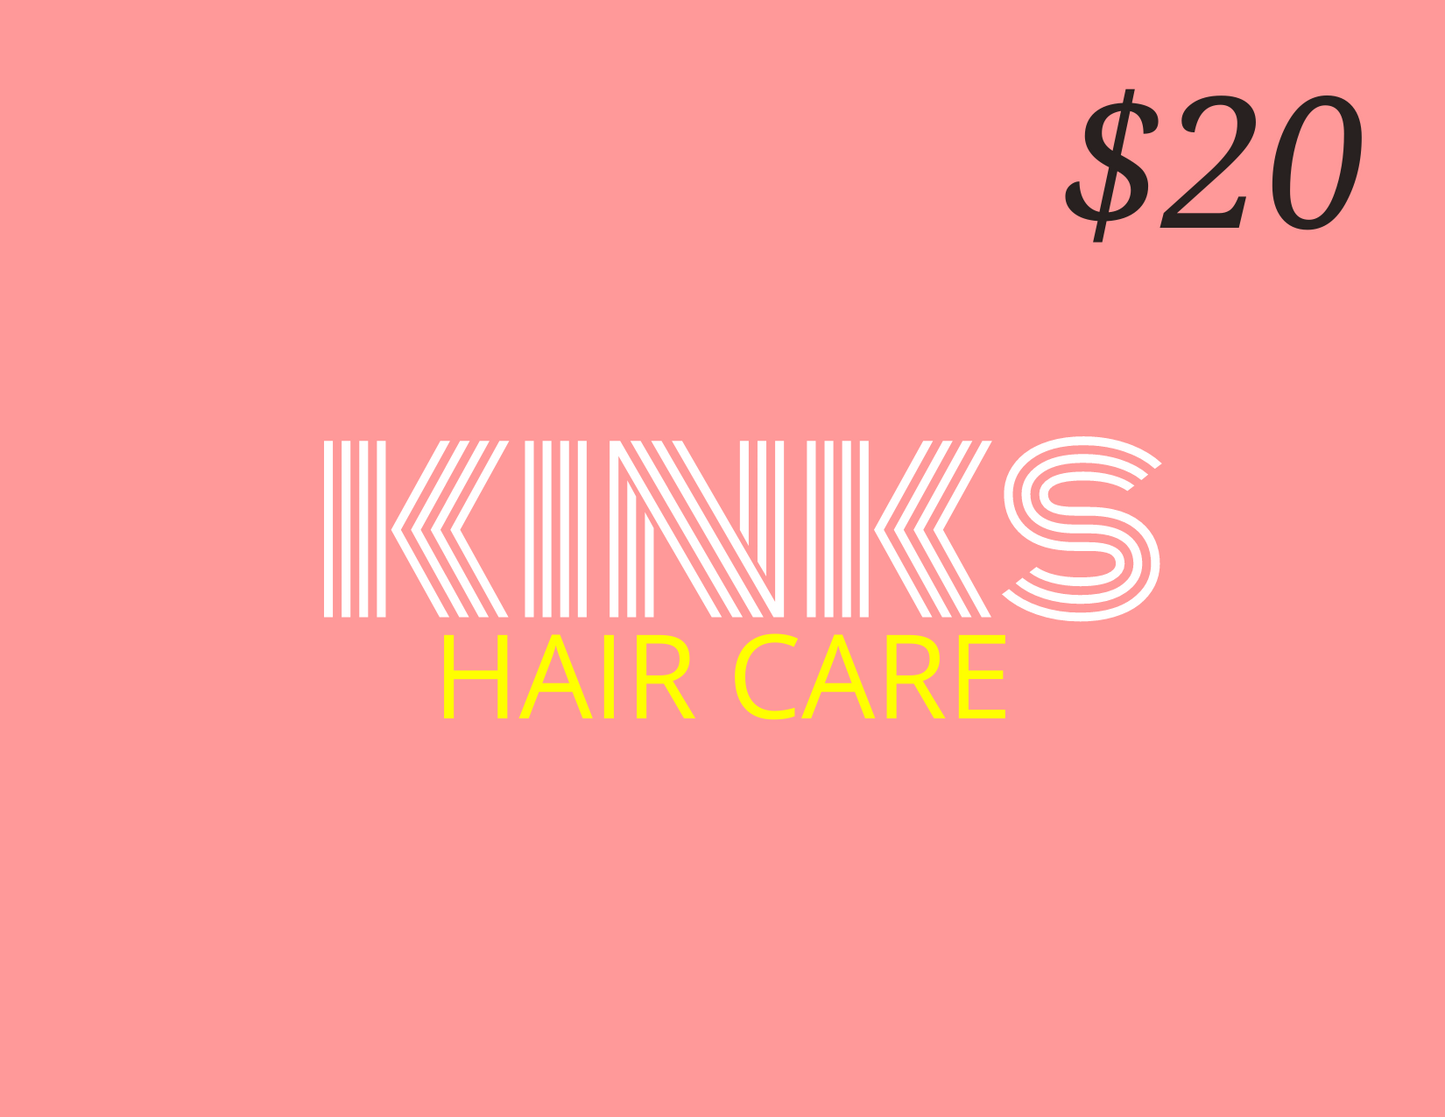 Kinks Hair Care gift card